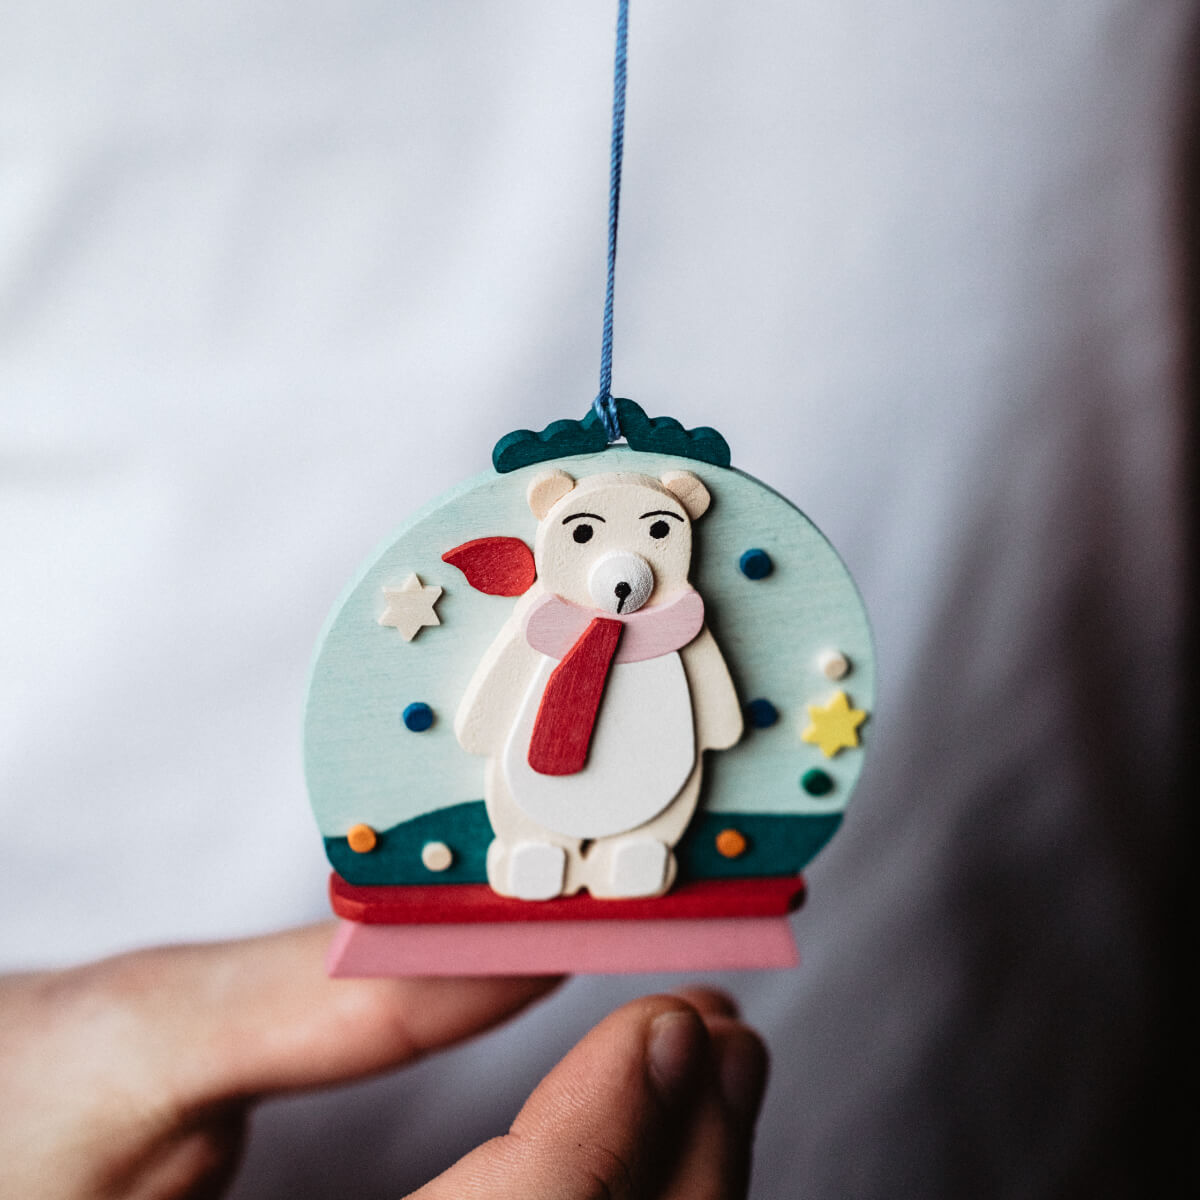 Snow Globe Ornament with polar bear